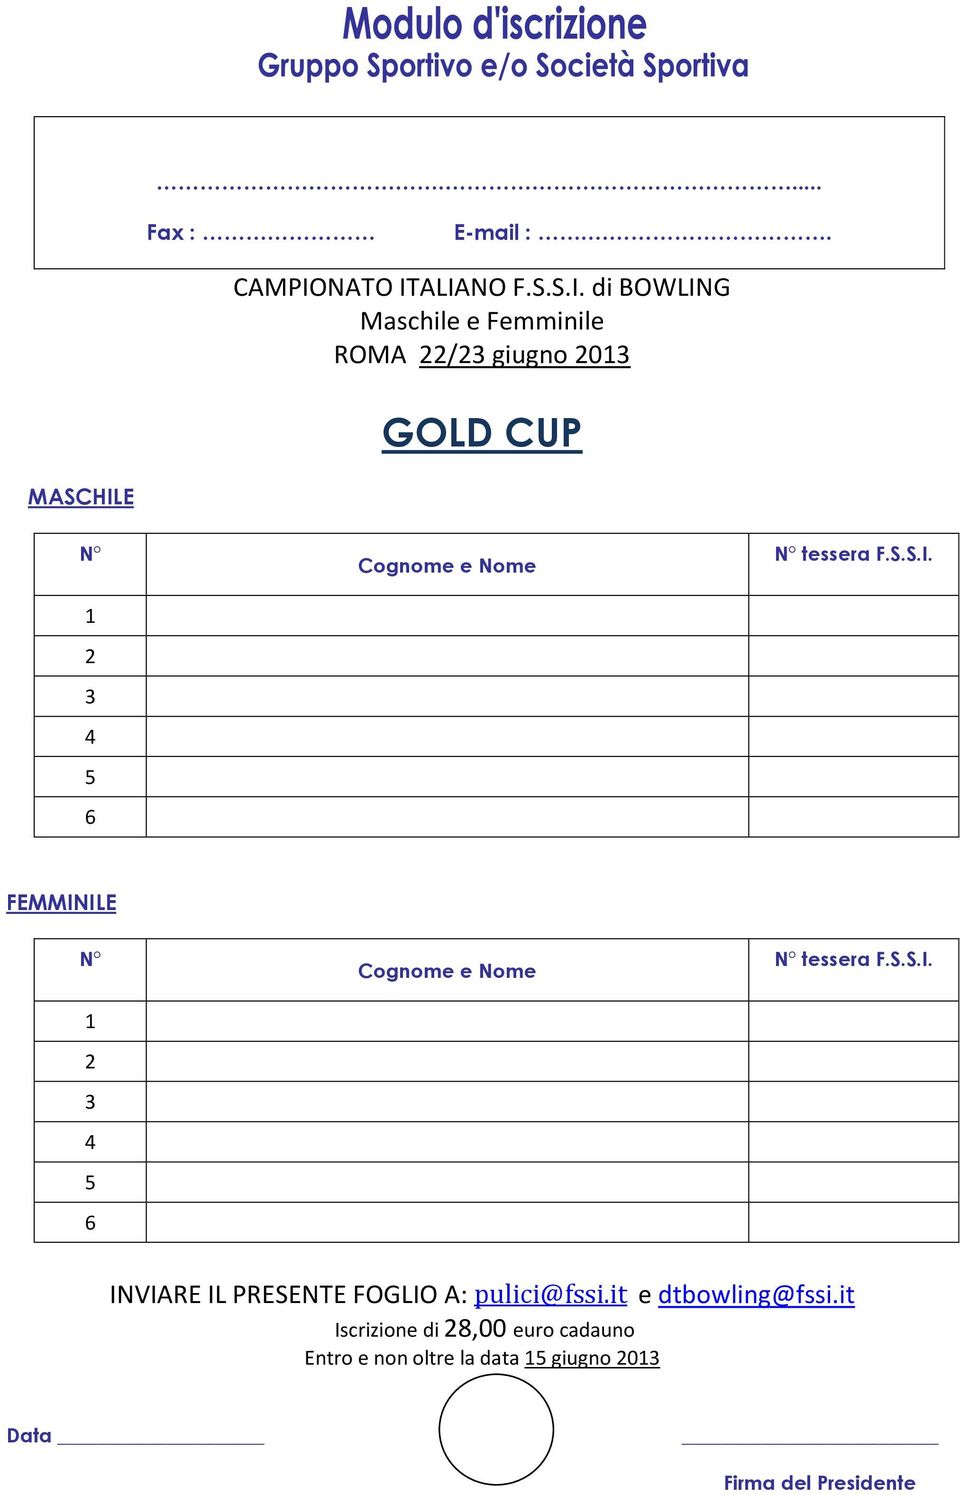 ALIANO F.S.S.I. di BOWLING e ROMA 22/23 giugno 2013 GOLD CUP MASCHILE N 1 2 3 4 5 6 Cognome e